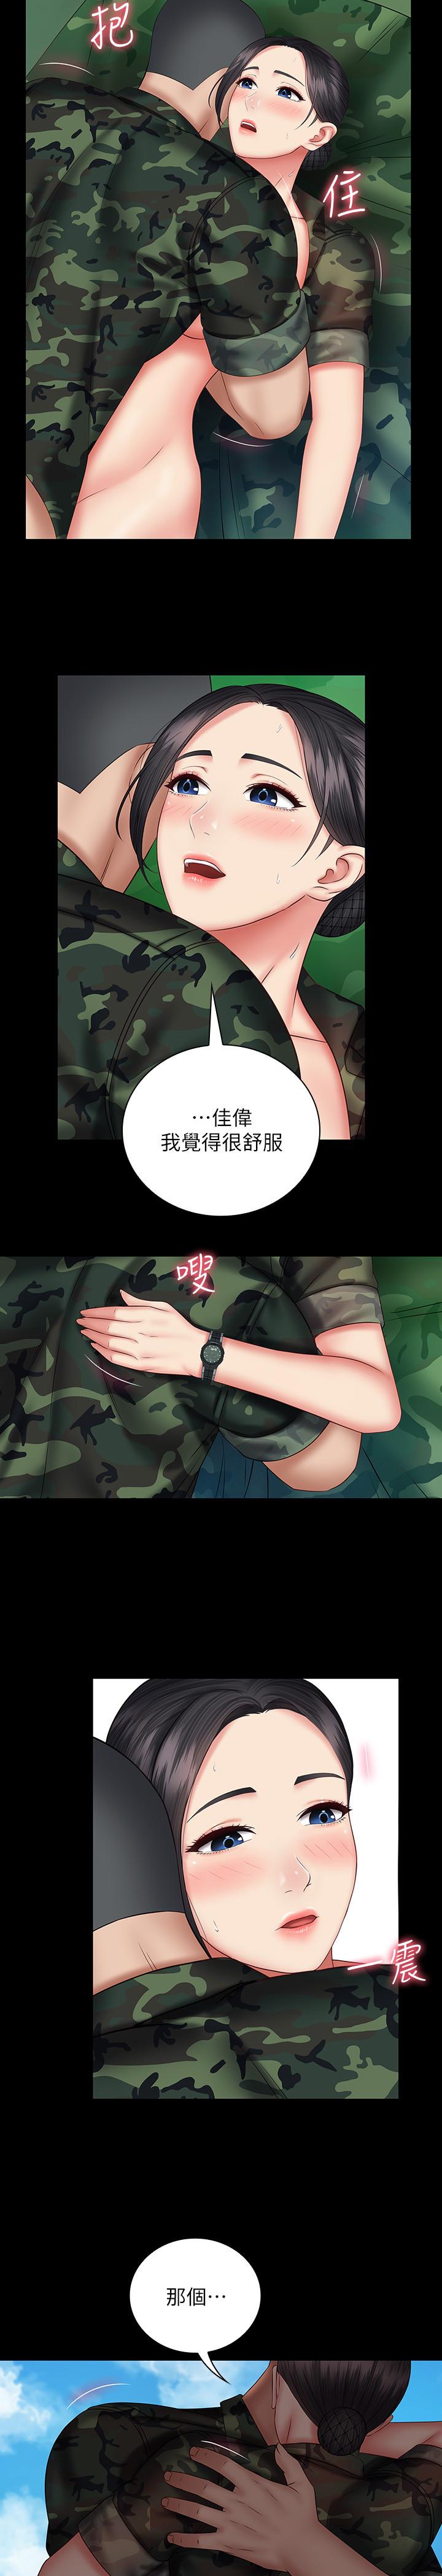 《妹妹的义务》漫画 第48话 - 刘志浩班长可疑的举动